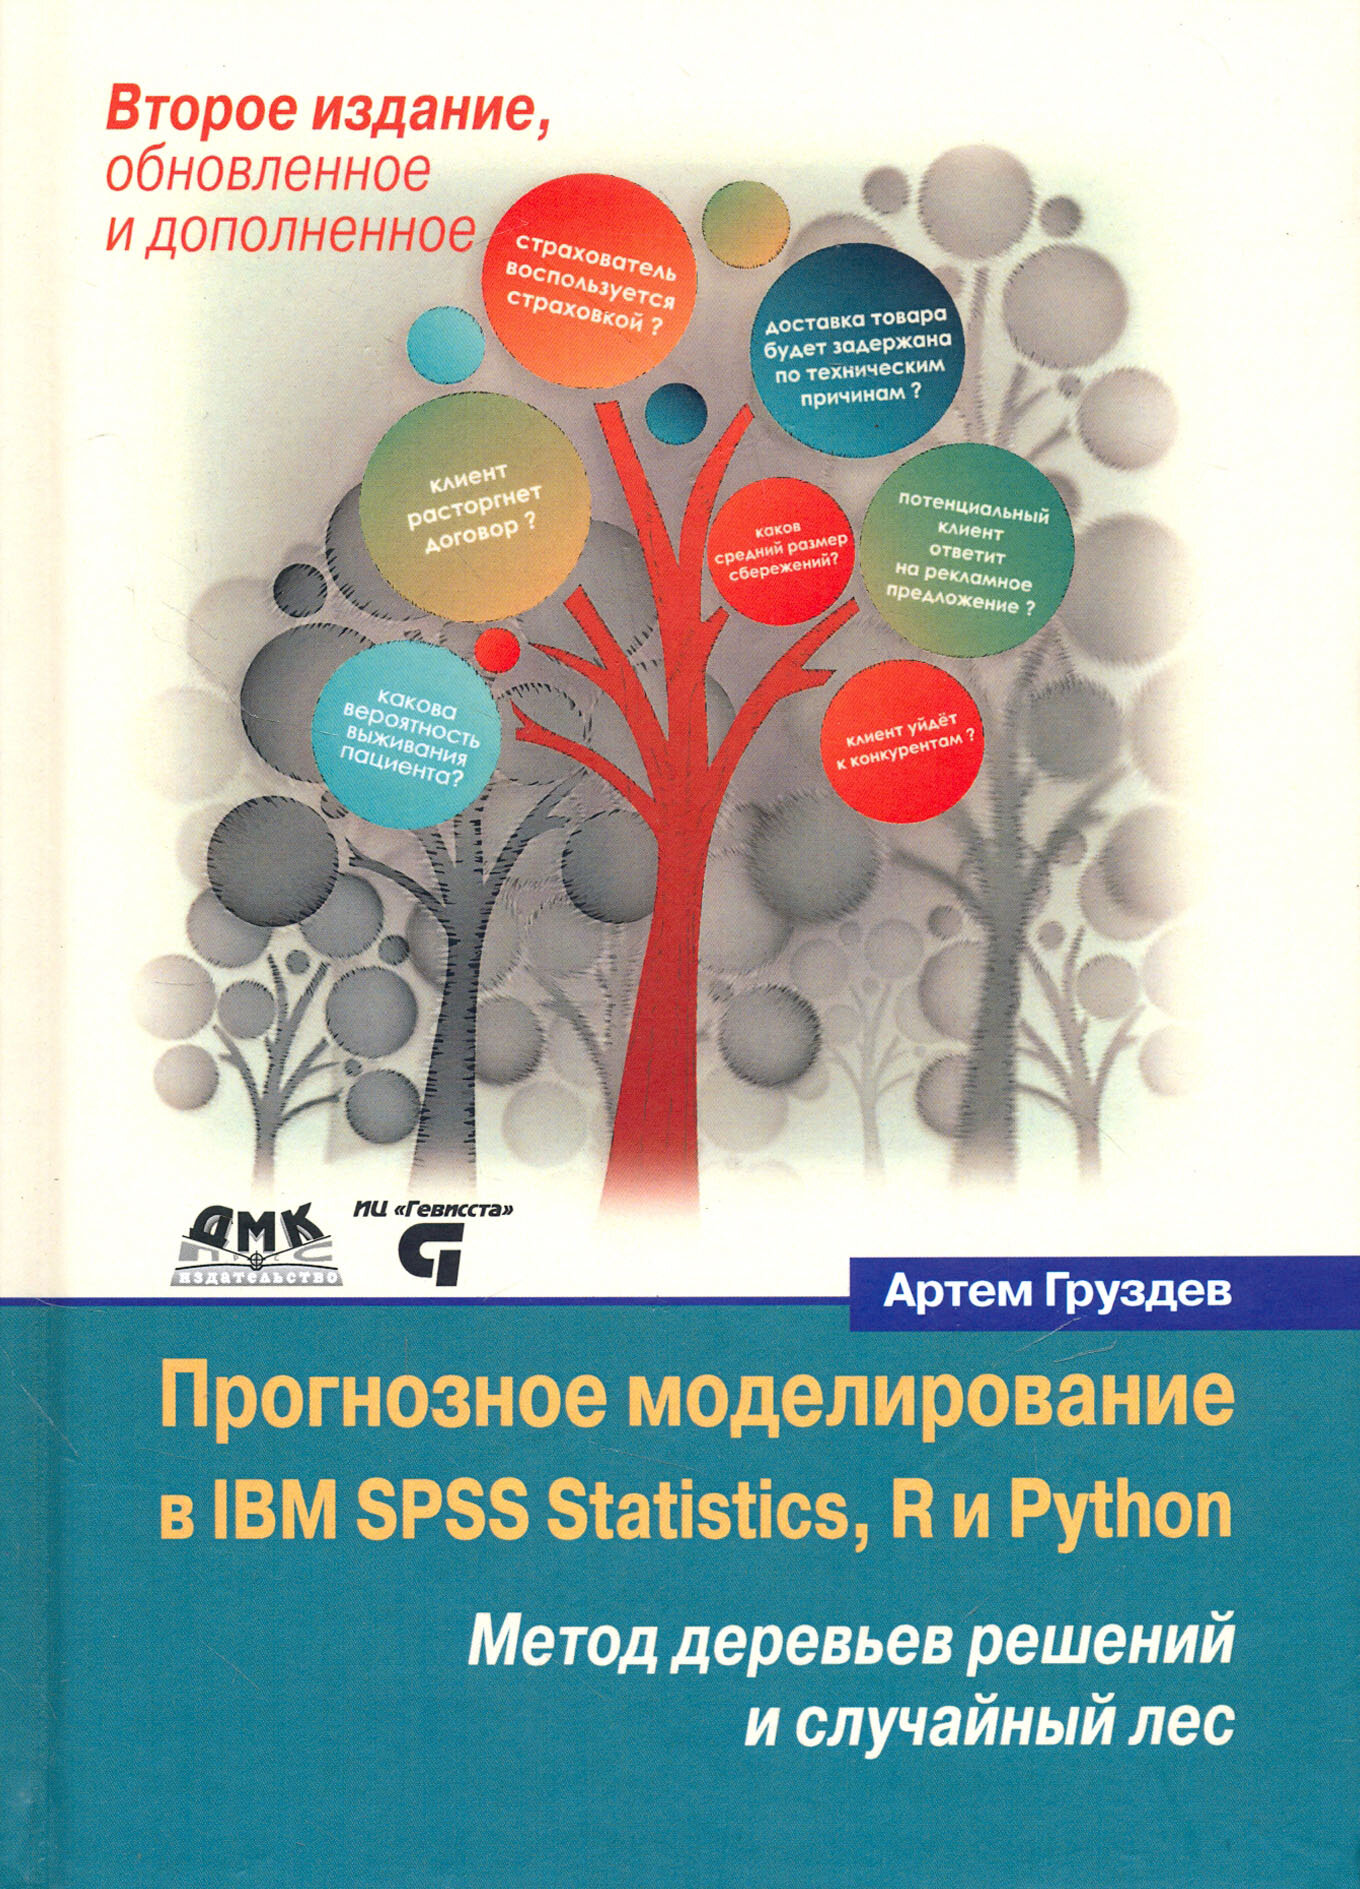 Прогнозное моделирование в IBM SPSS Statistics, R и Python. Метод деревьев решений и случайный лес - фото №2